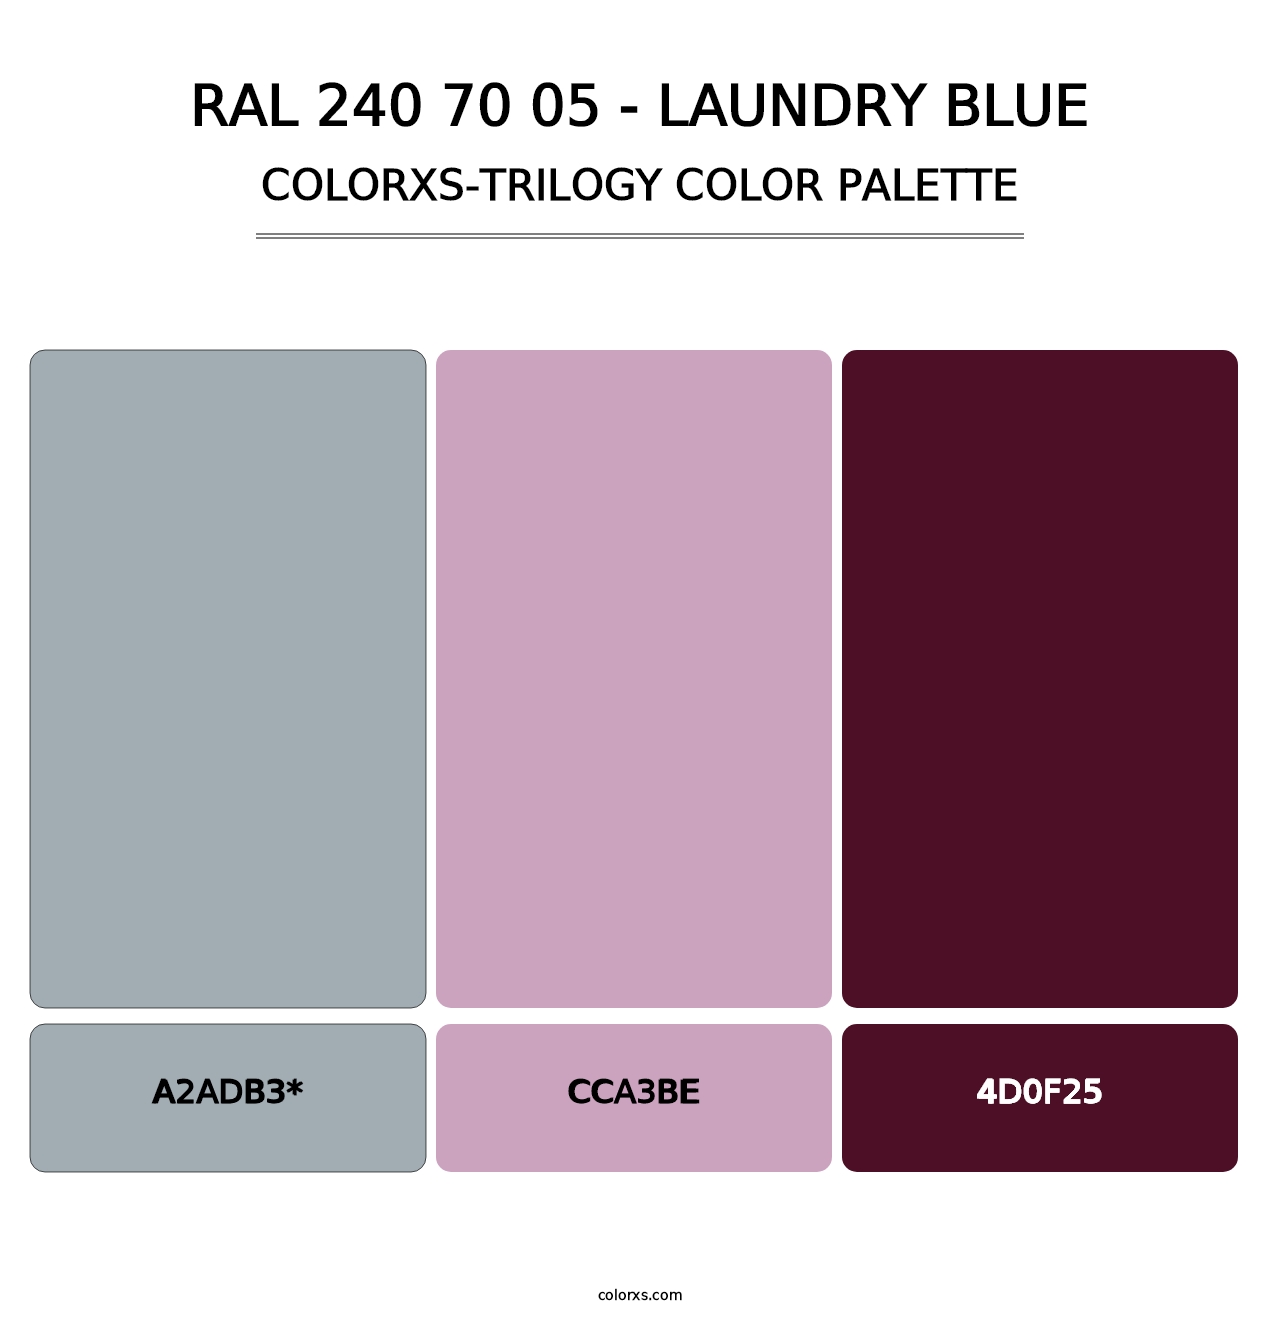 RAL 240 70 05 - Laundry Blue - Colorxs Trilogy Palette